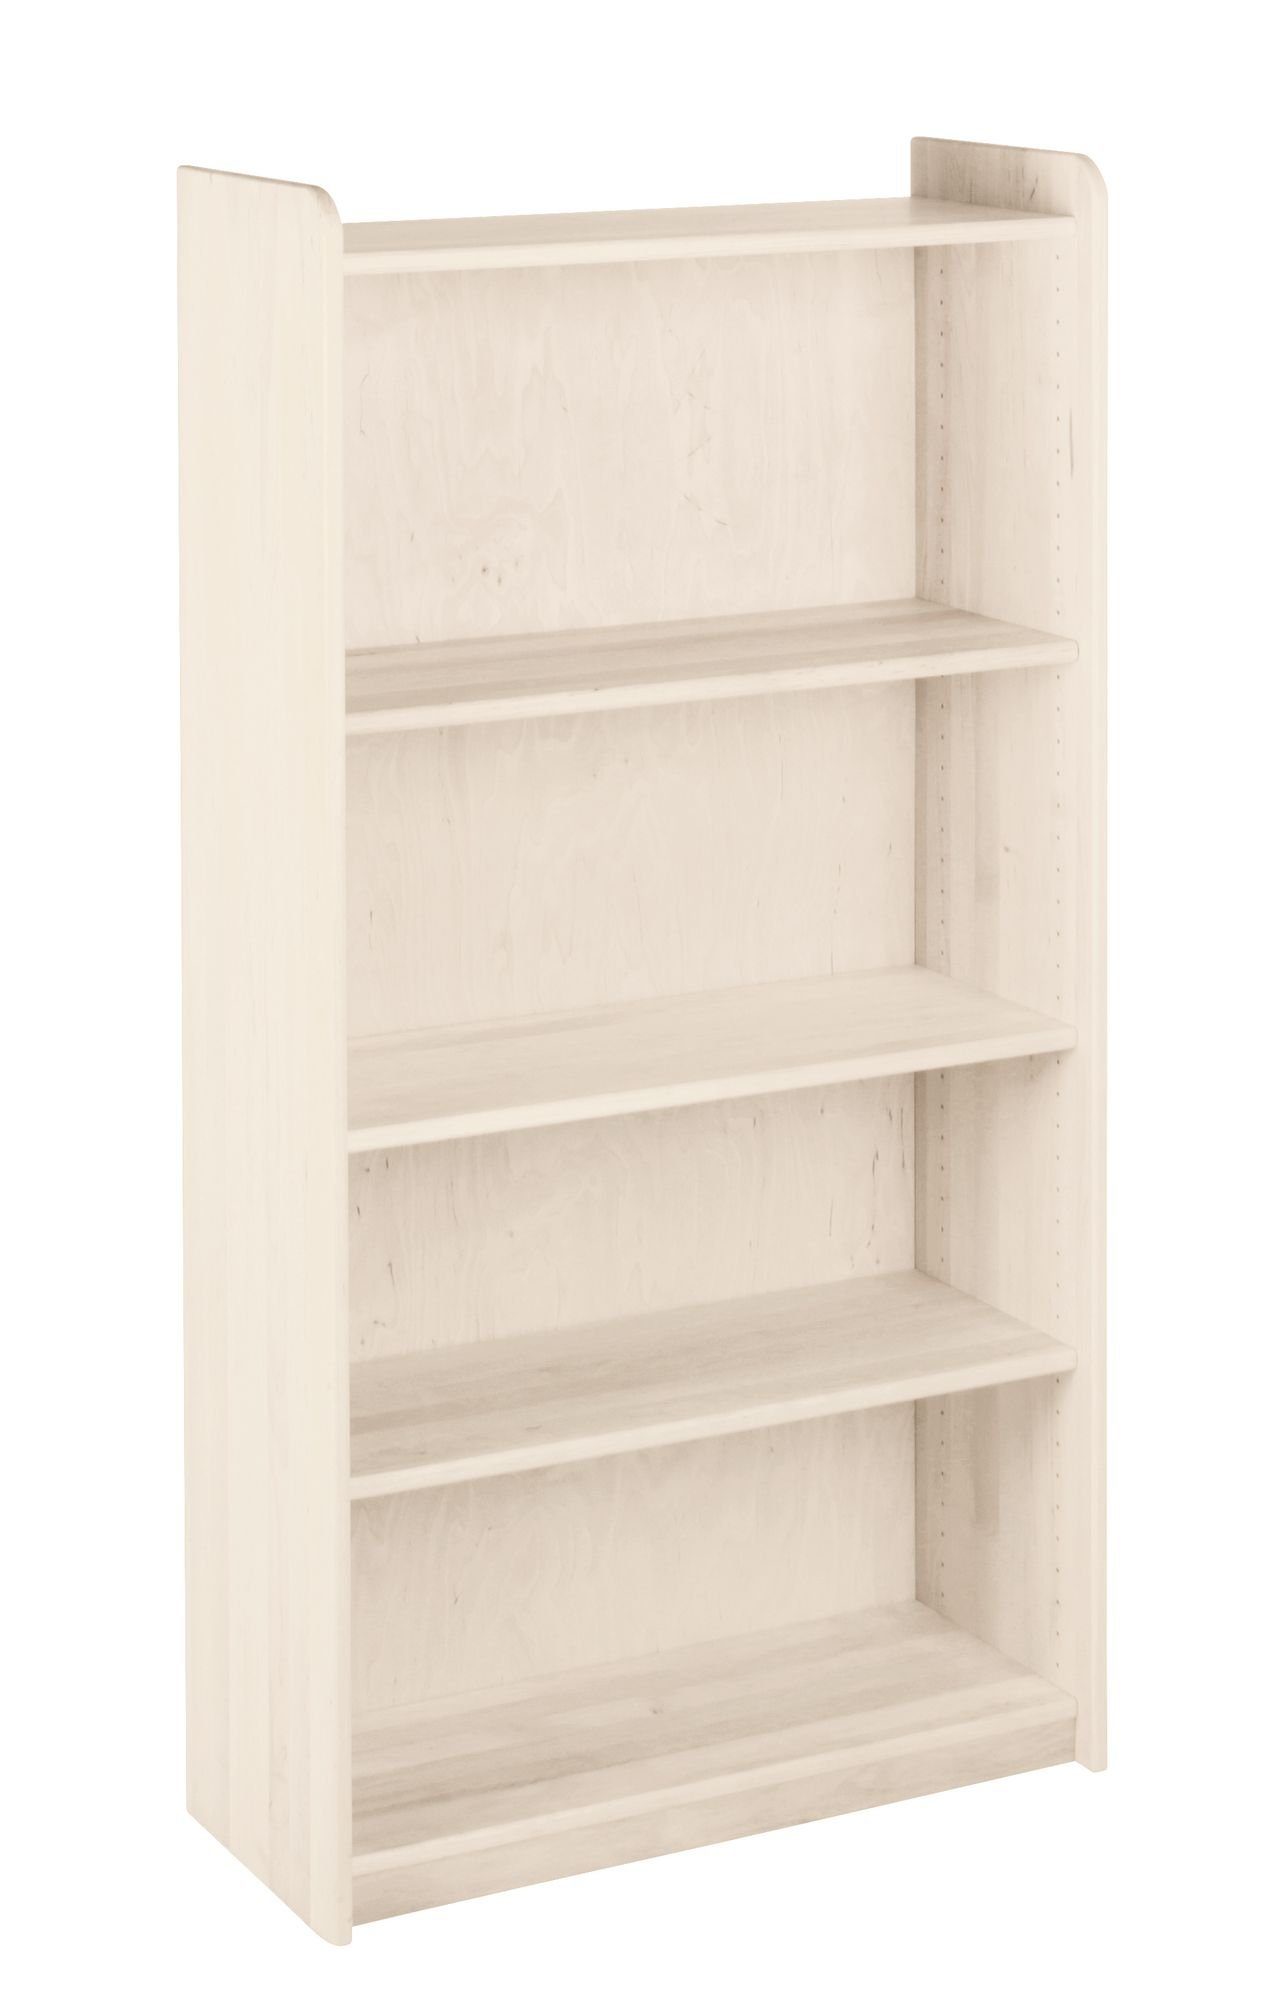 BioKinder - Das gesunde Kinderzimmer Standregal Lara, Bücherregal 160 cm mit 3 Einlegeböden